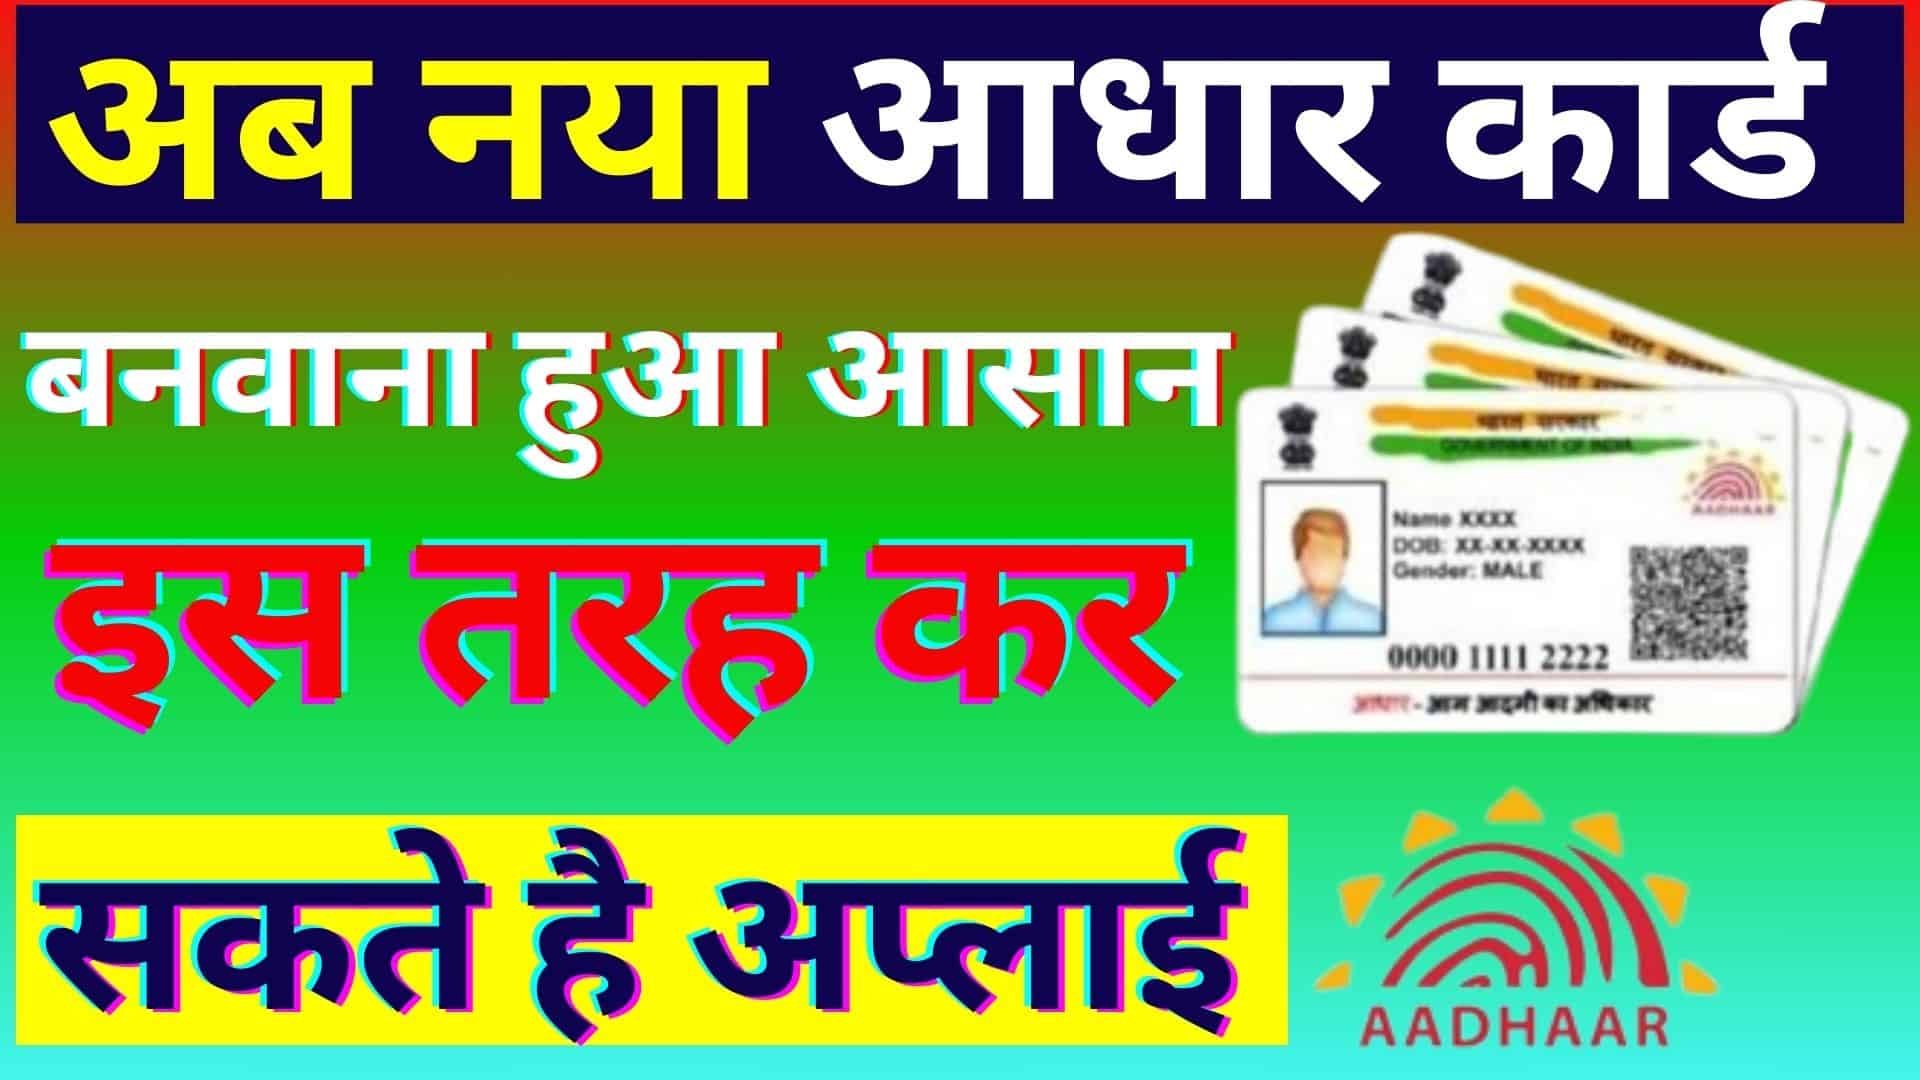 New Adhaar Card Online Apply Kaise Kare 2023 : अब नया आधार कार्ड बनवाना हुआ आसान इस तरह कर सकते है अप्लाई